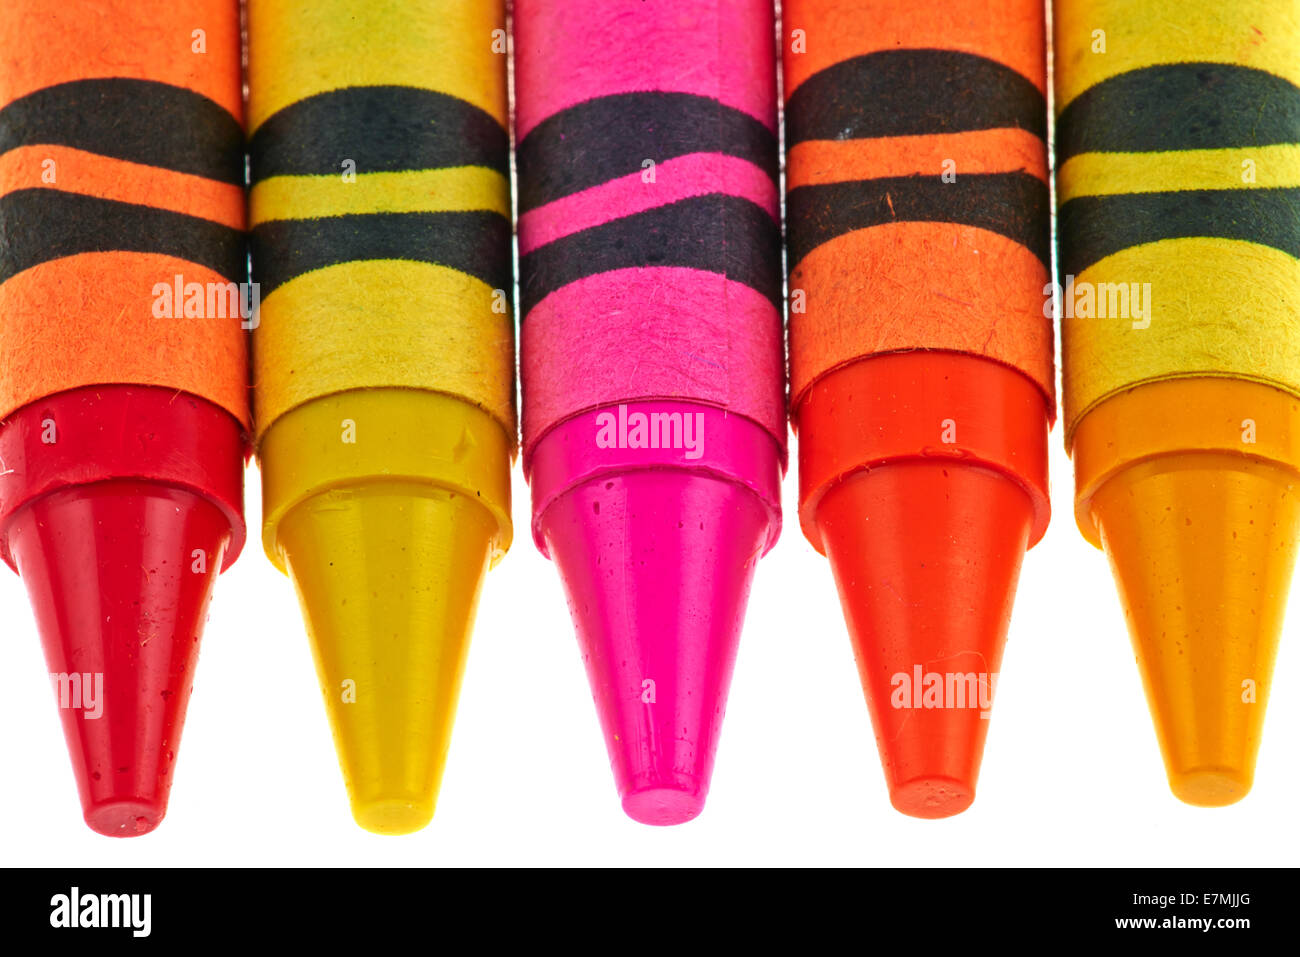 https://c8.alamy.com/comp/E7MJJG/coloured-crayola-crayons-E7MJJG.jpg